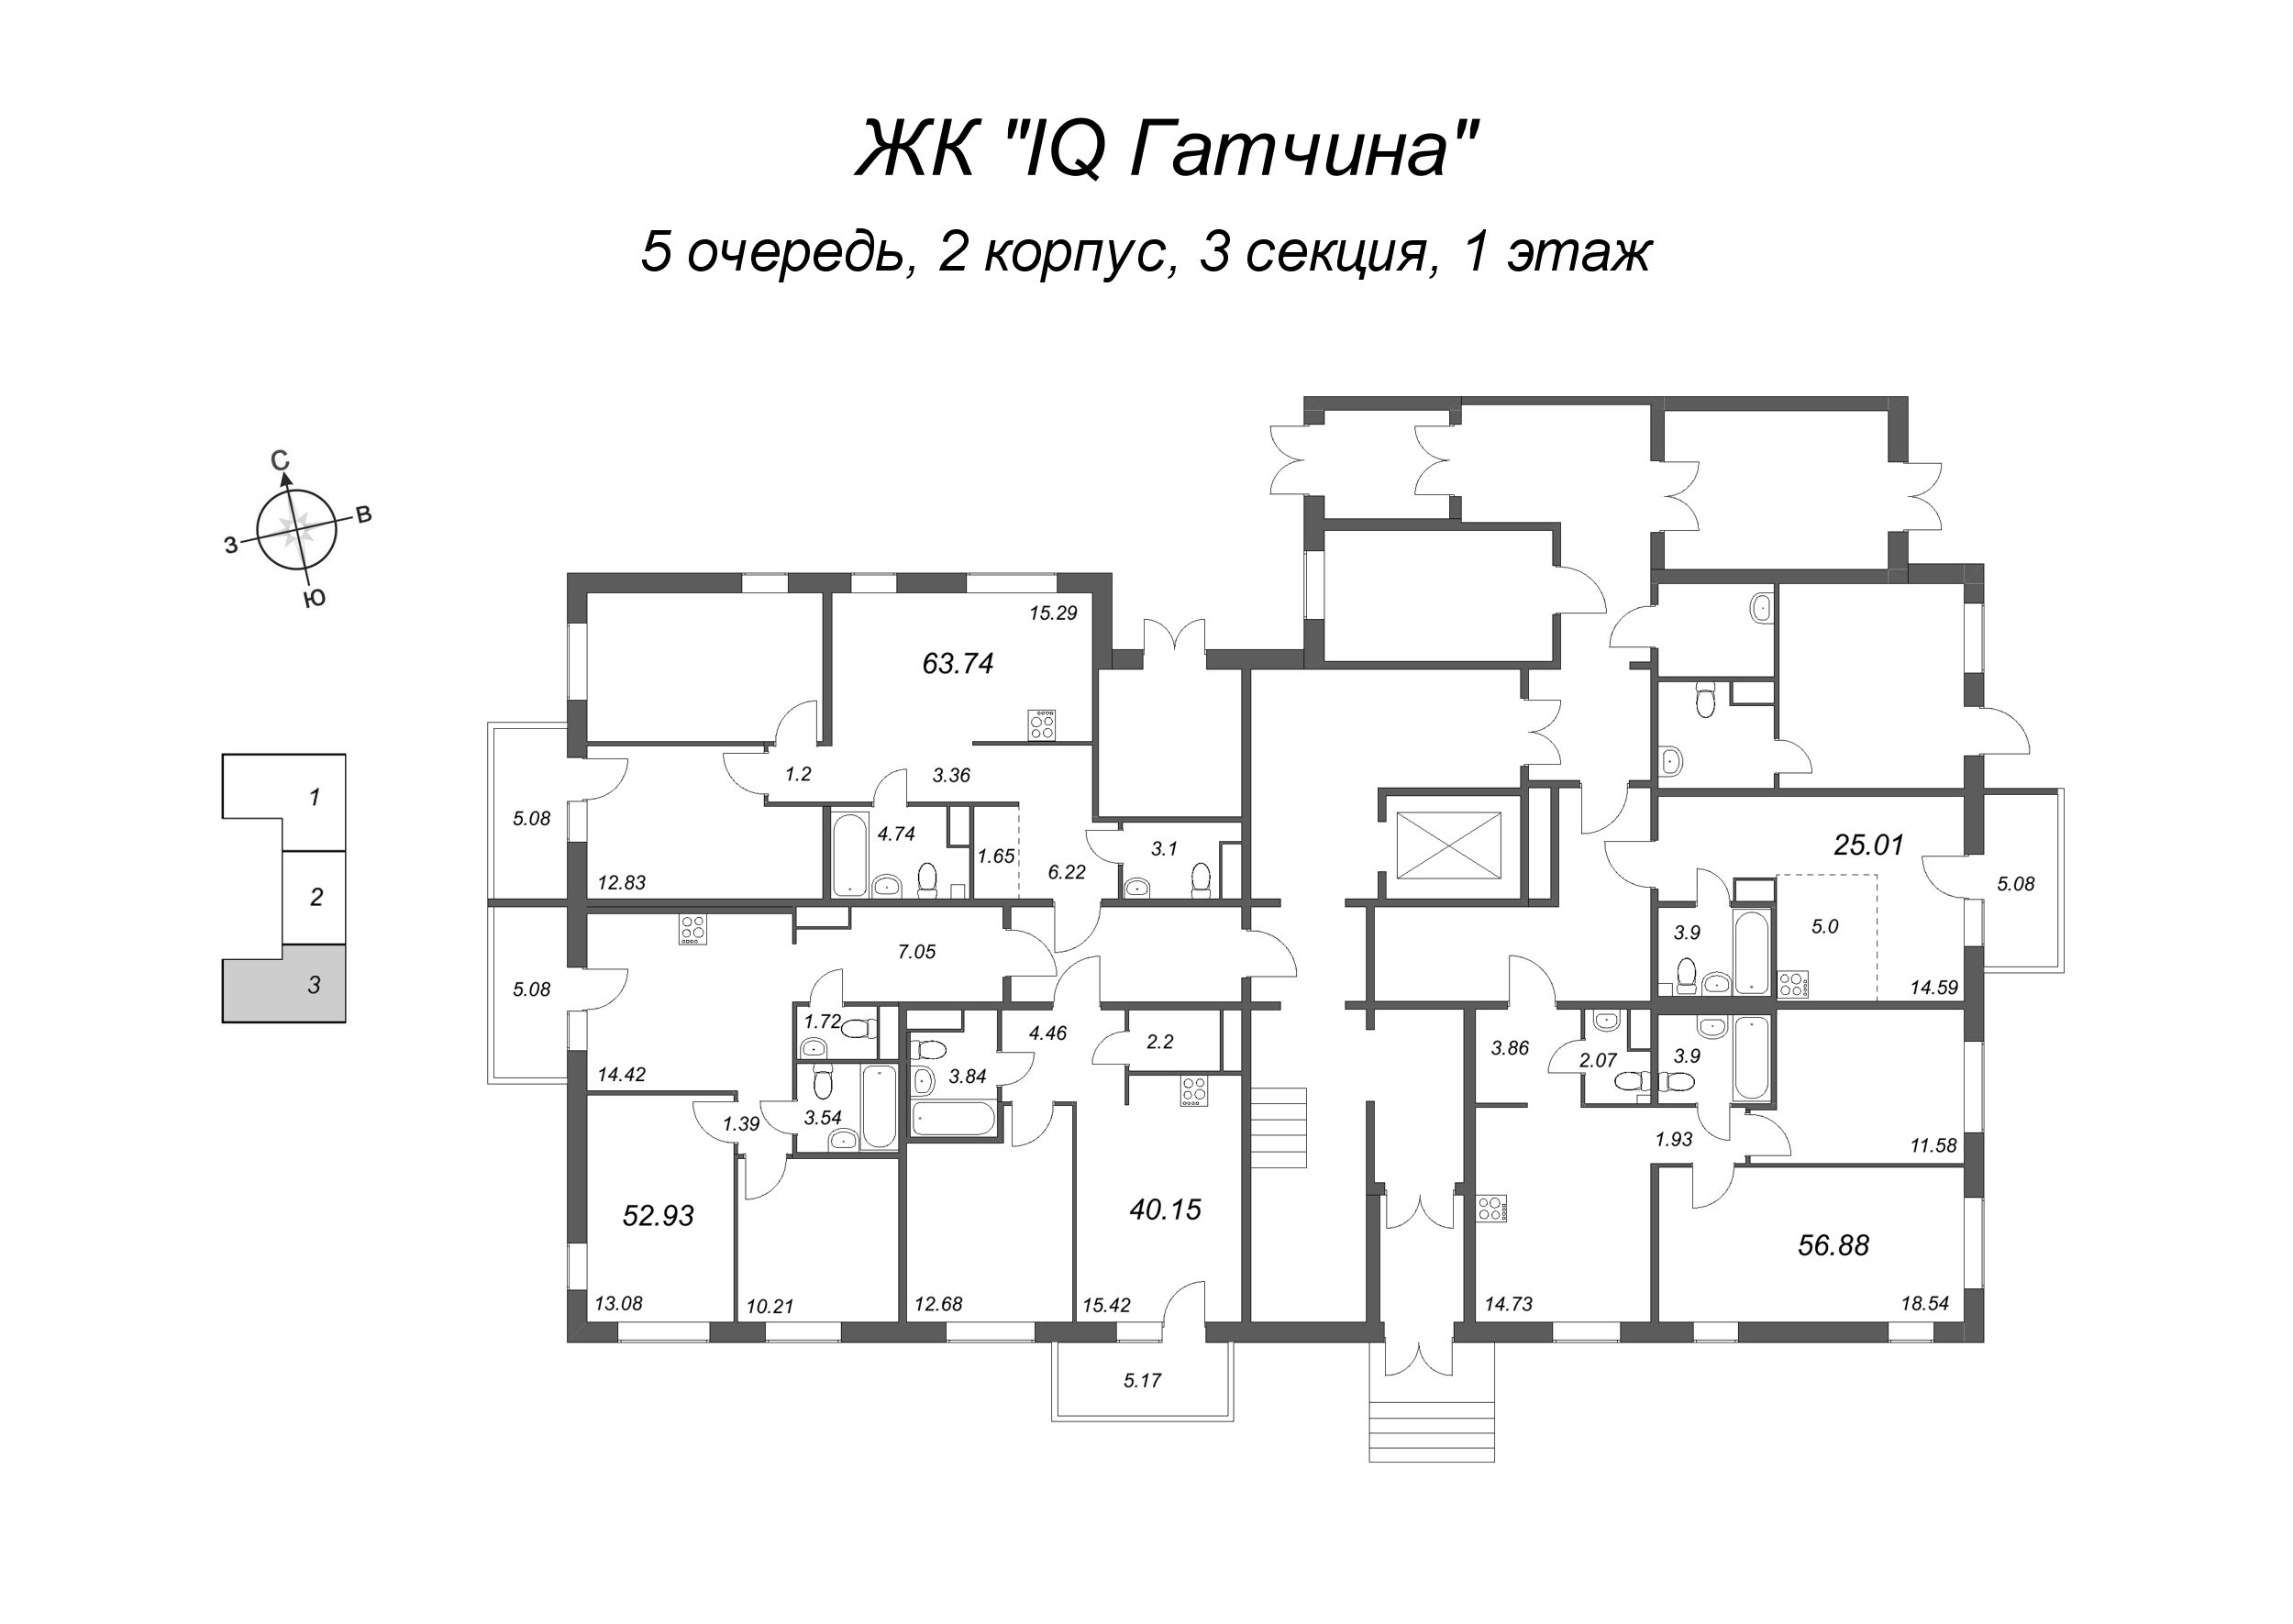 2-комнатная квартира, 56.88 м² в ЖК "IQ Гатчина" - планировка этажа